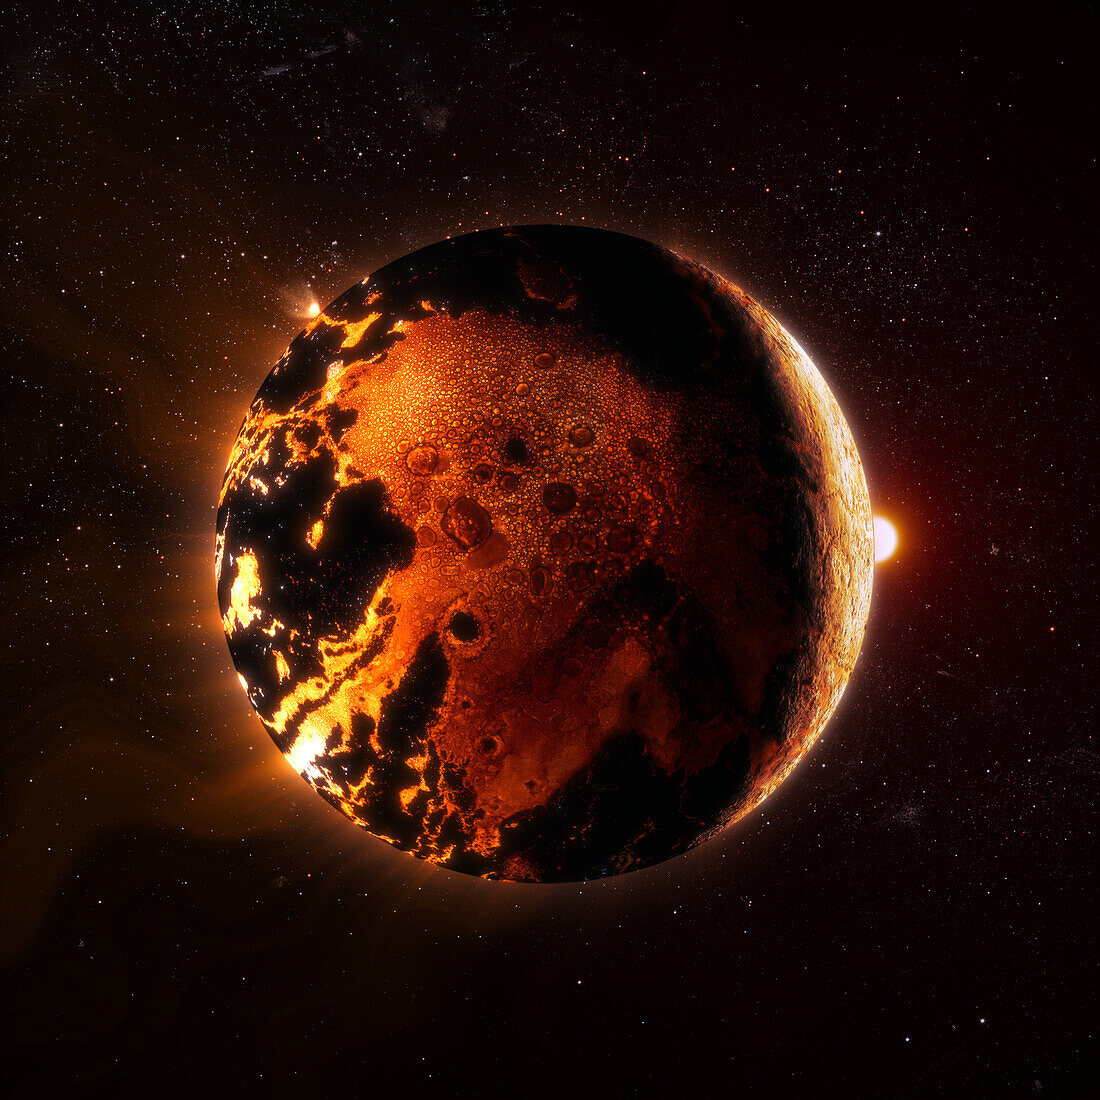 Molten planet, composite image